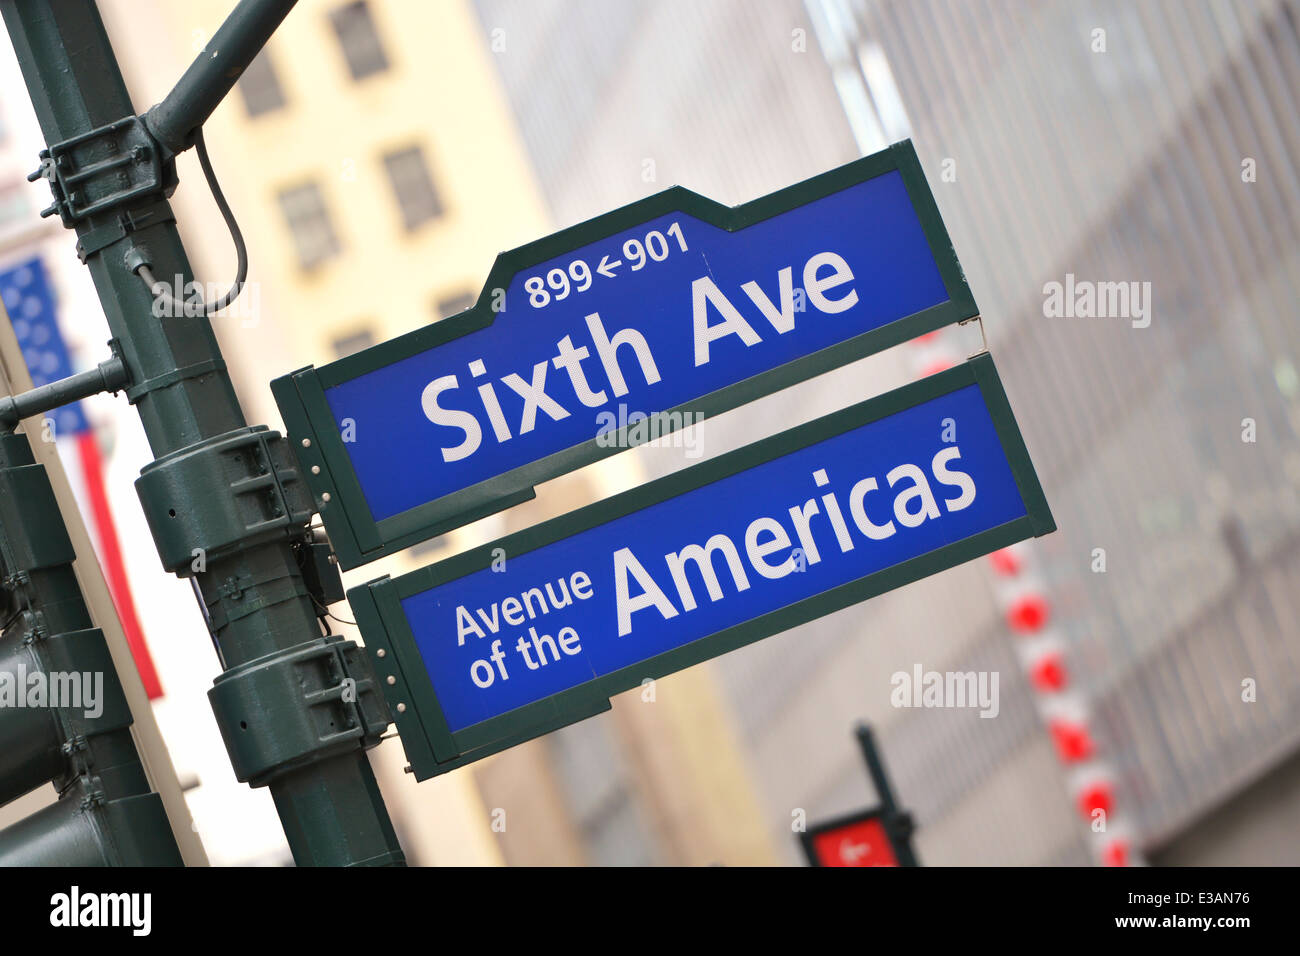 Sesta Ave Avenue, strada segno, cartelli stradali, New York, NY Foto Stock